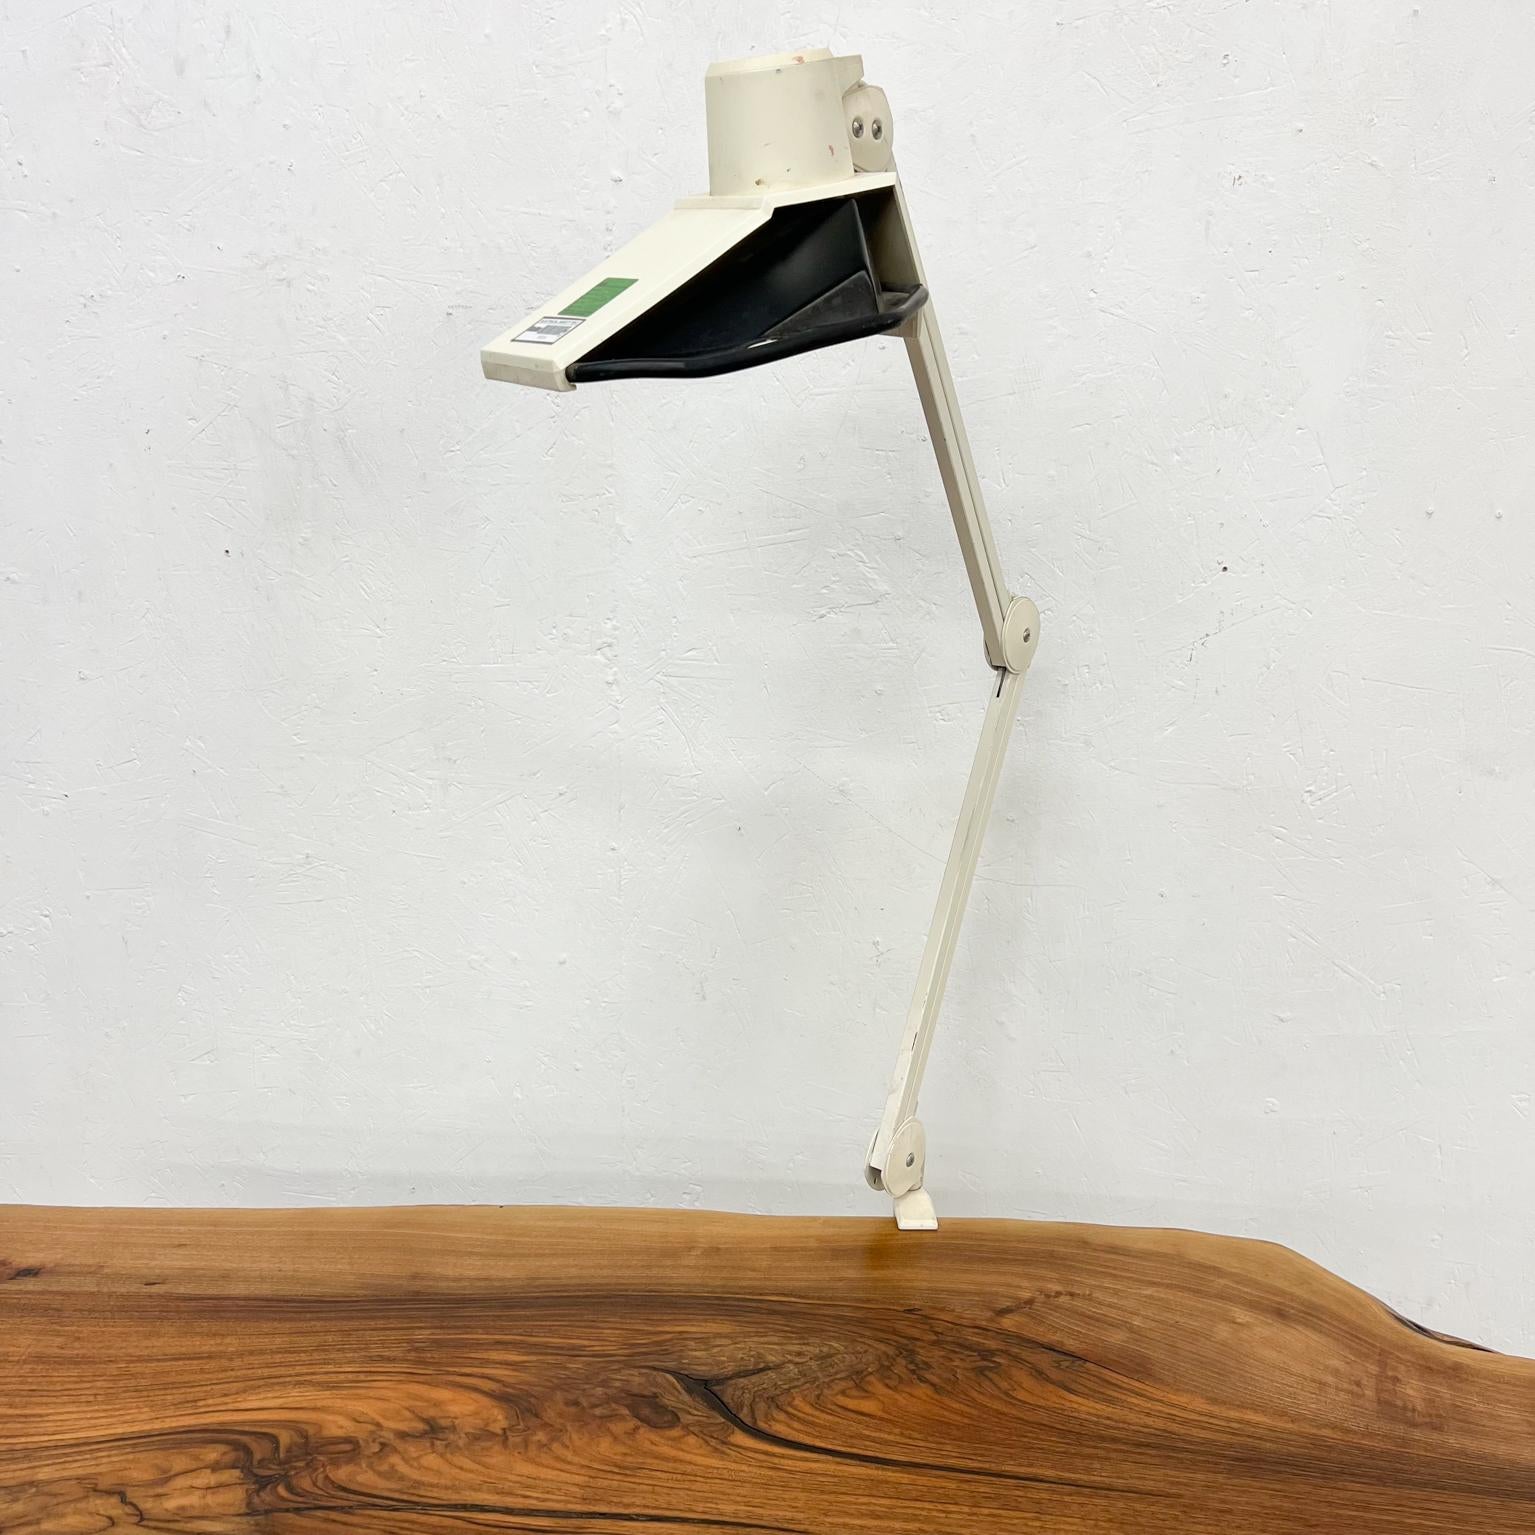 1970 By Luxo Industrial Metal Architect Task clamp lamp for desk
Design attribué à Jacob Jacobsen (Finlande)
Articulation entièrement réglable.
Lampe de bureau très inhabituelle.
Testé et fonctionnant actuellement.
Estampillé avec les